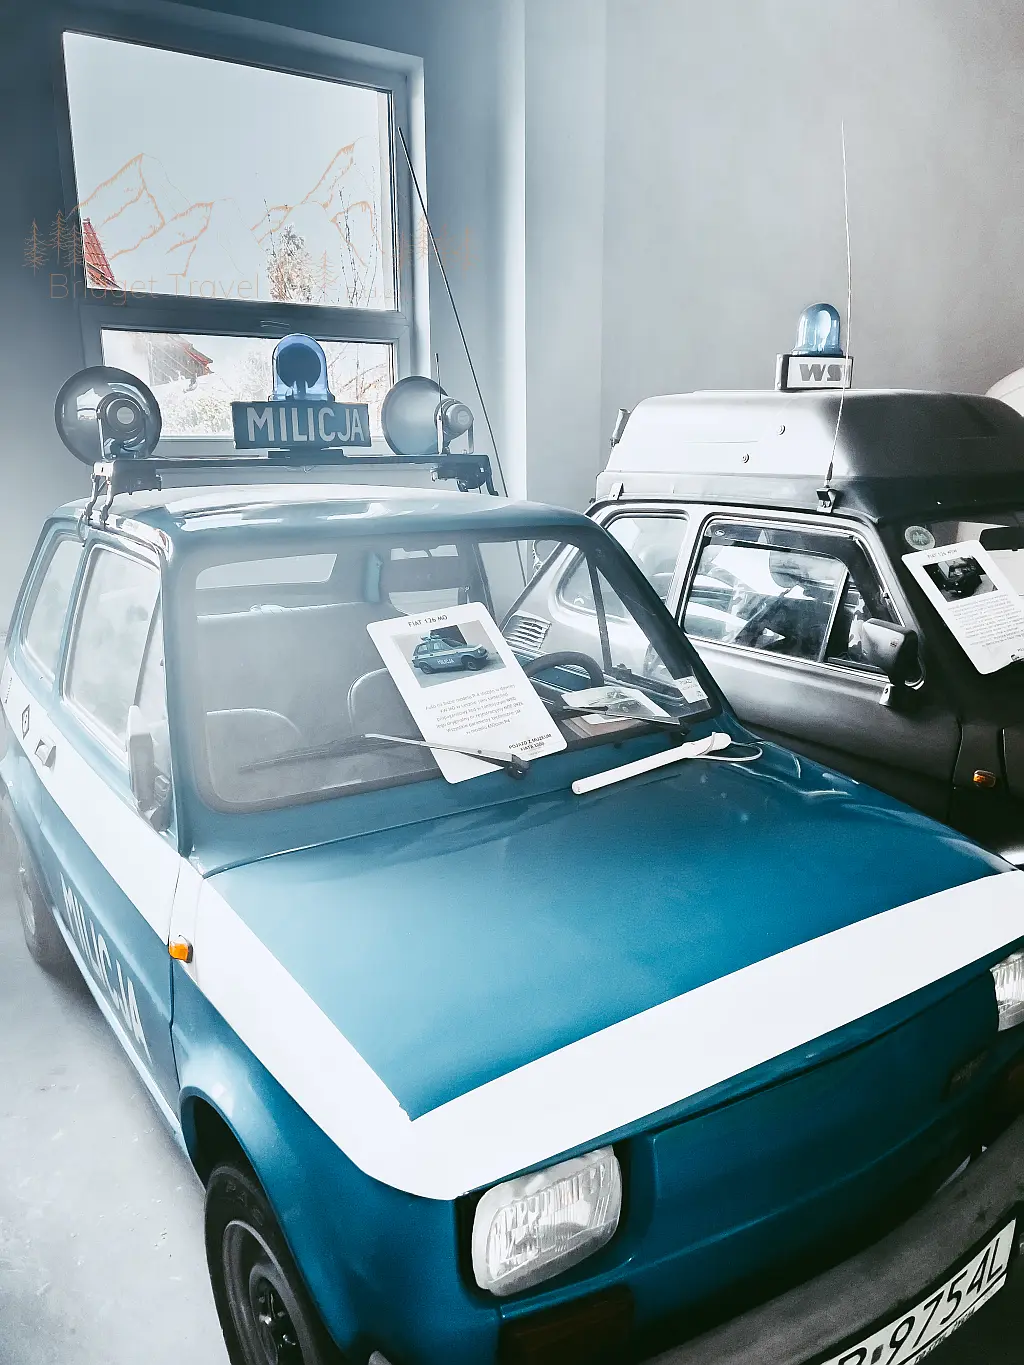 Samochód Milicji wraz z wyposażeniem, Muzeum Fiata 126p, Bielsko Biała